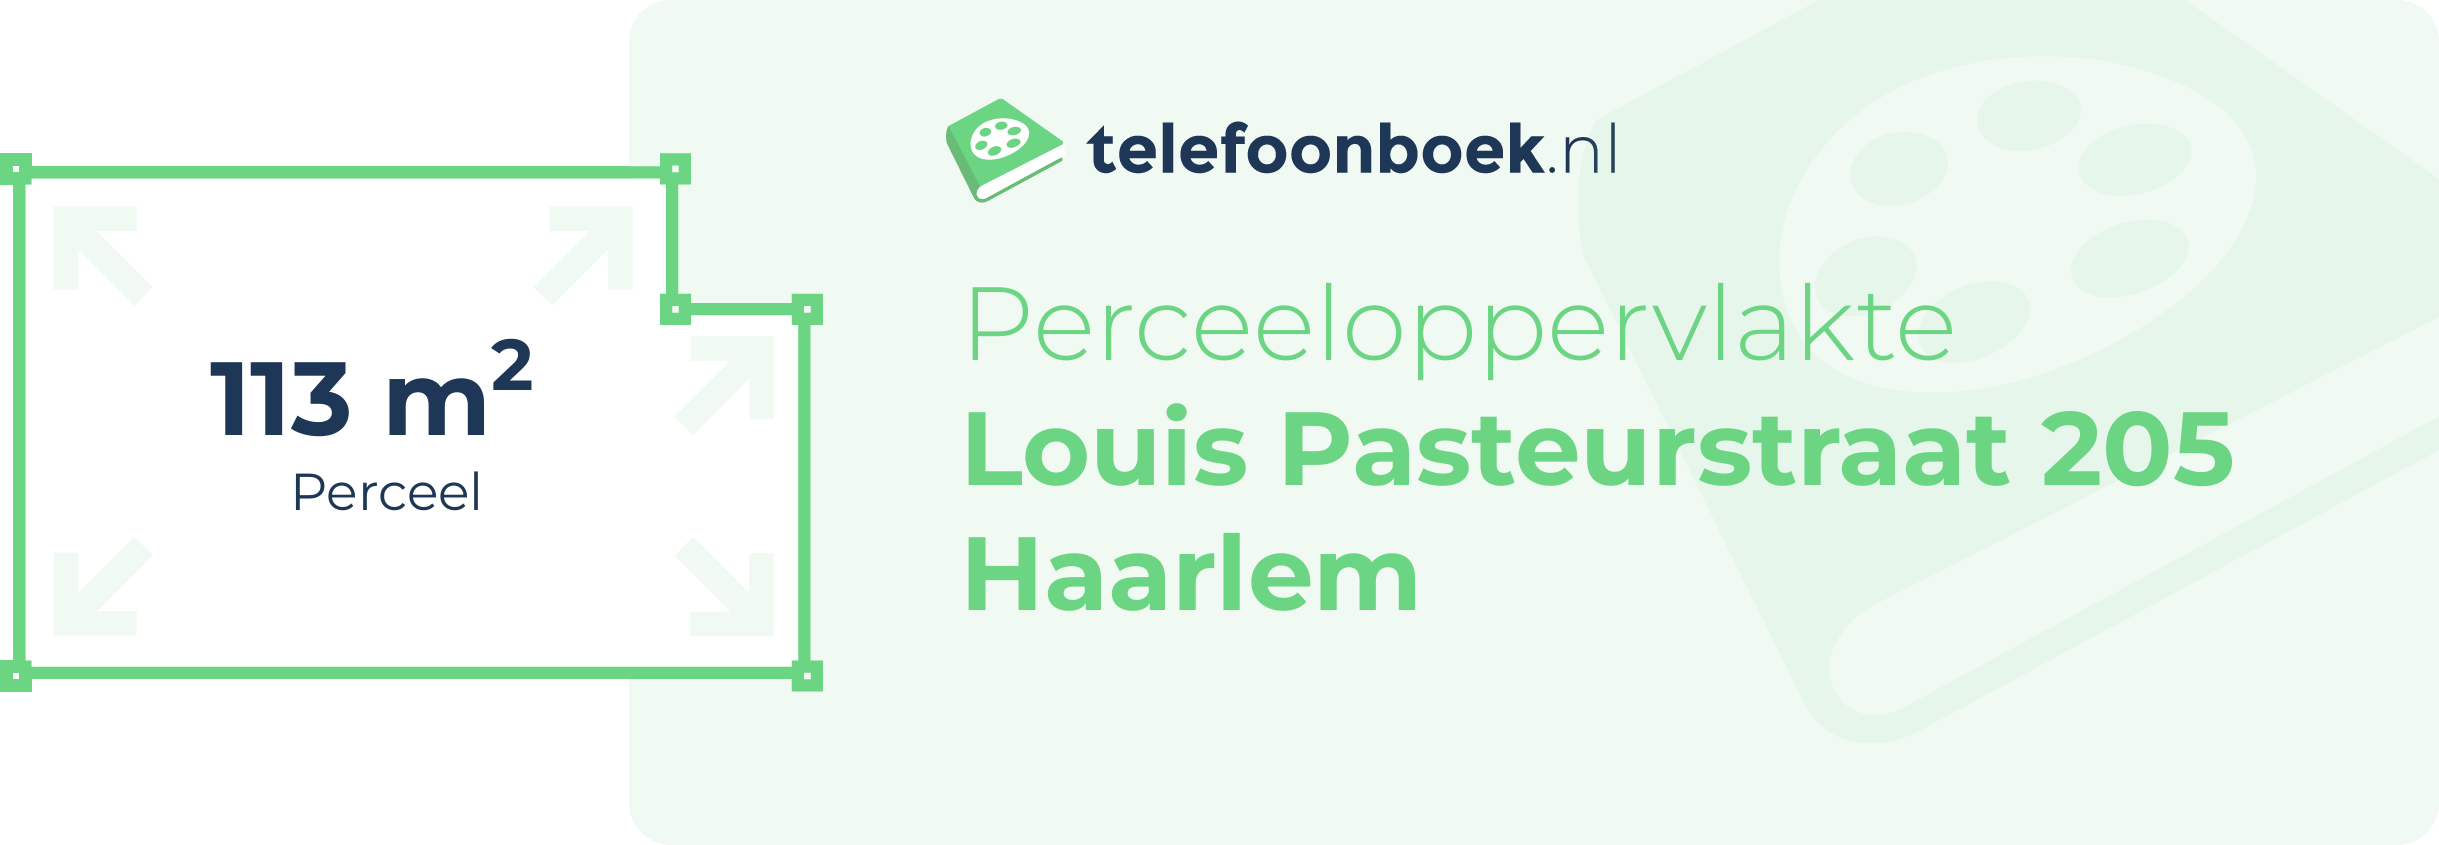 Perceeloppervlakte Louis Pasteurstraat 205 Haarlem